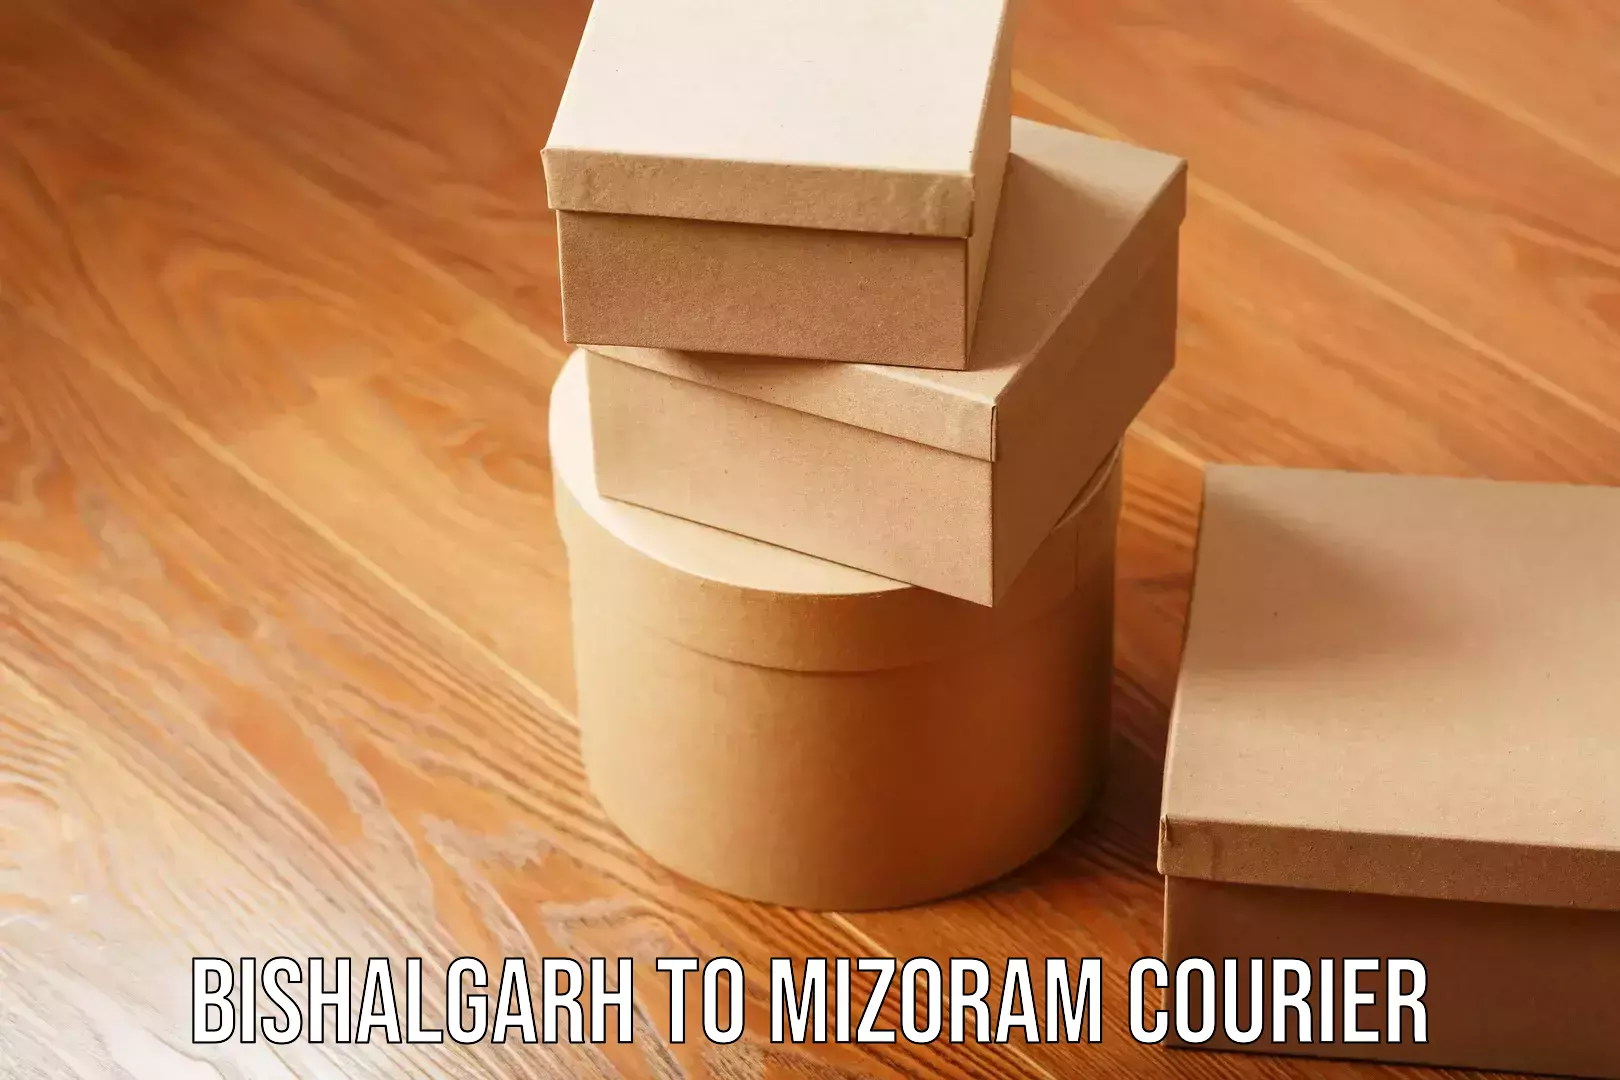 Business shipping needs Bishalgarh to Mizoram